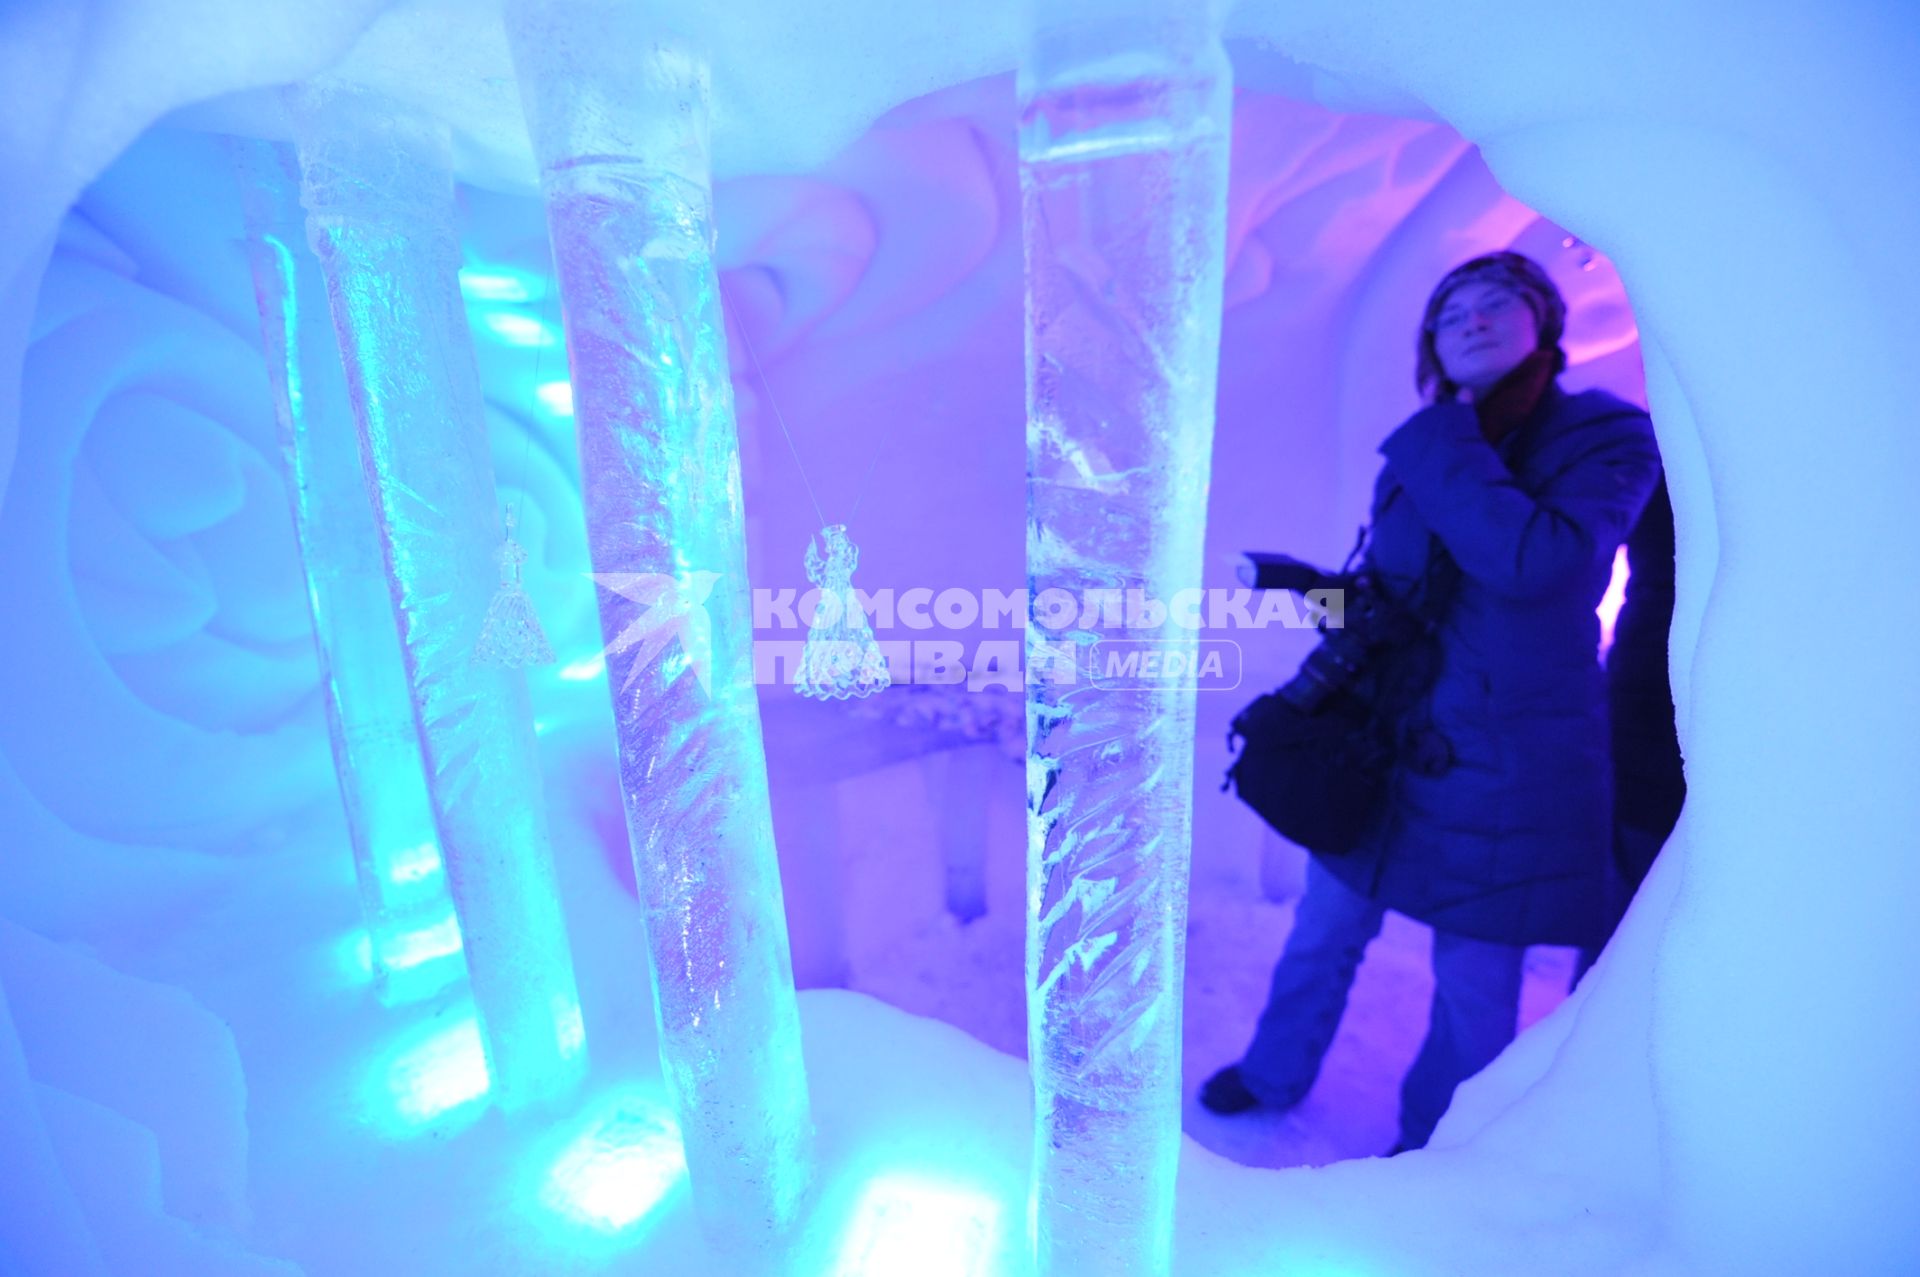 Ледяной город МОРОЗ СИТИ открылся в парке культуры СОКОЛЬНИКИ. На снимке: фотограф в ледяной скульптуре.10 января   2012 года.